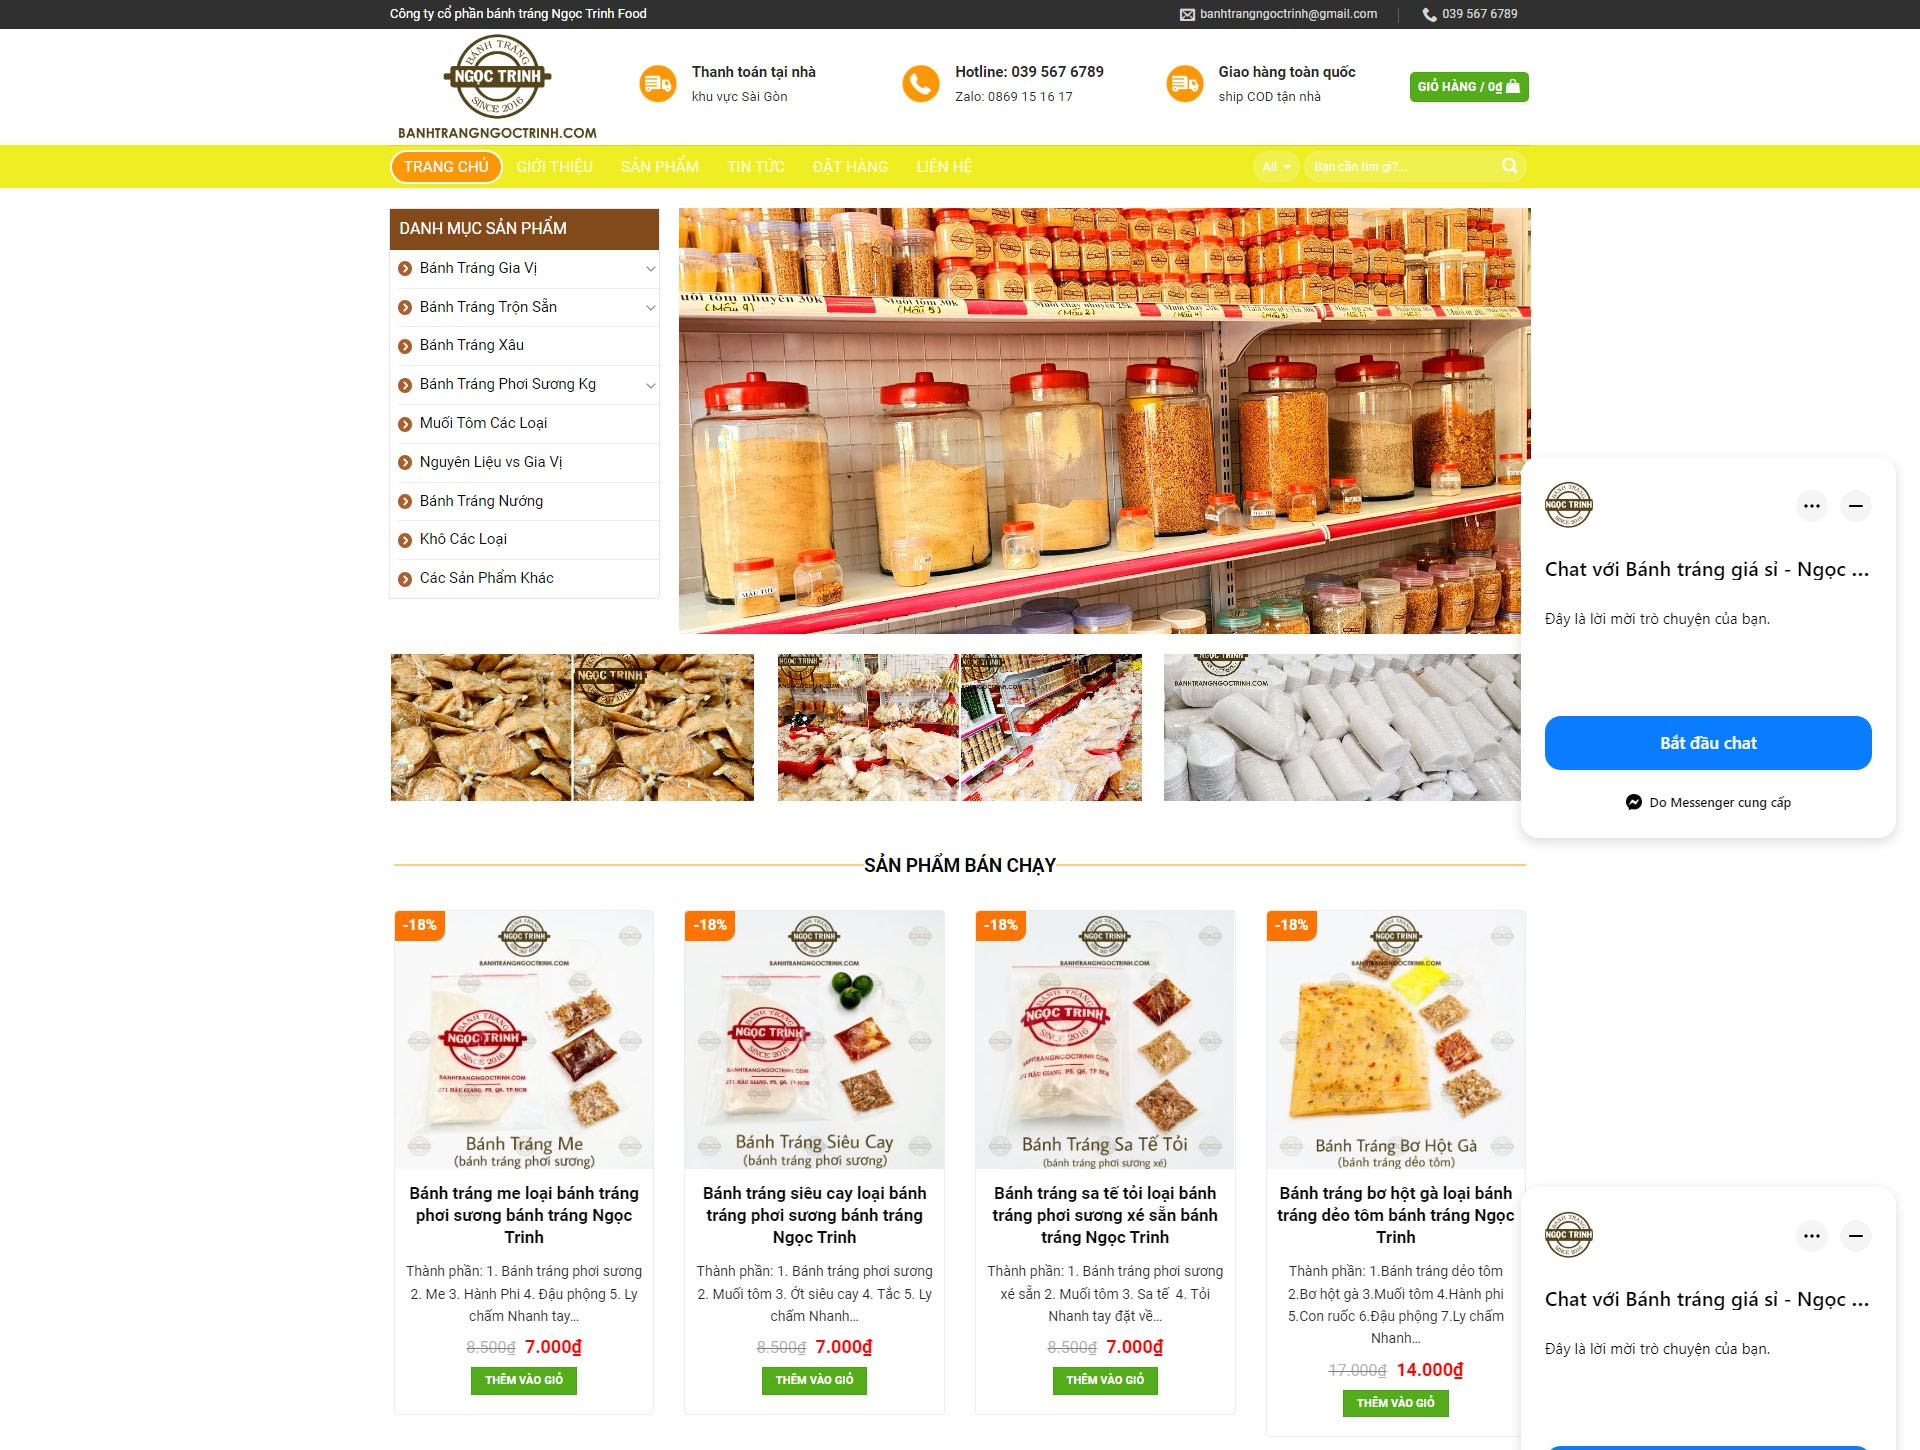 Lợi ích của việc thiết kế website bán bánh tráng